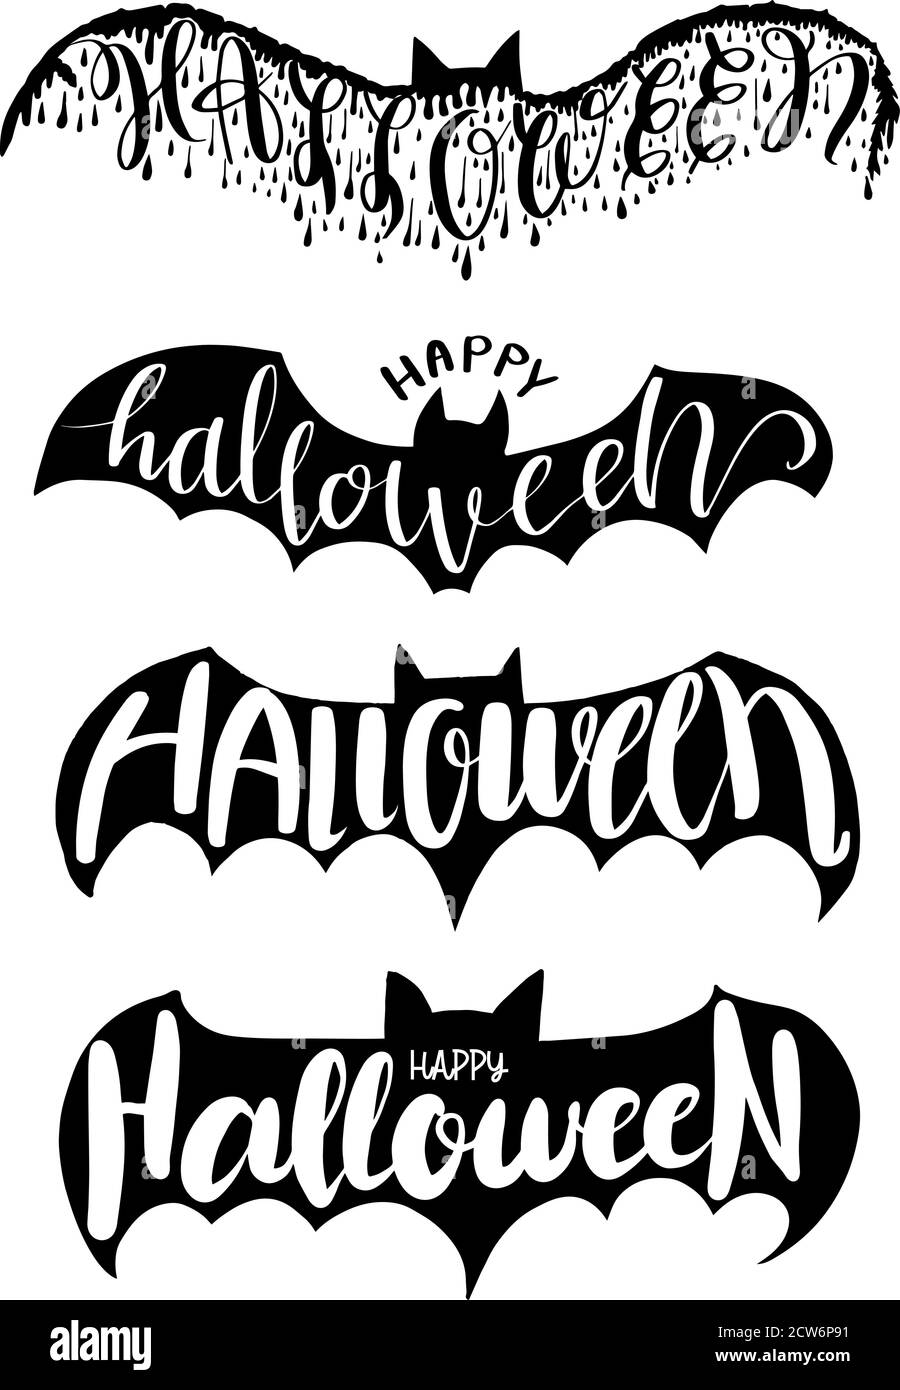 Scritta di Halloween sull'illustrazione vettoriale di bat per la festa di Halloween, la scheda di invito dell'elemento di Halloween, il poster e l'adesivo di stampa Illustrazione Vettoriale